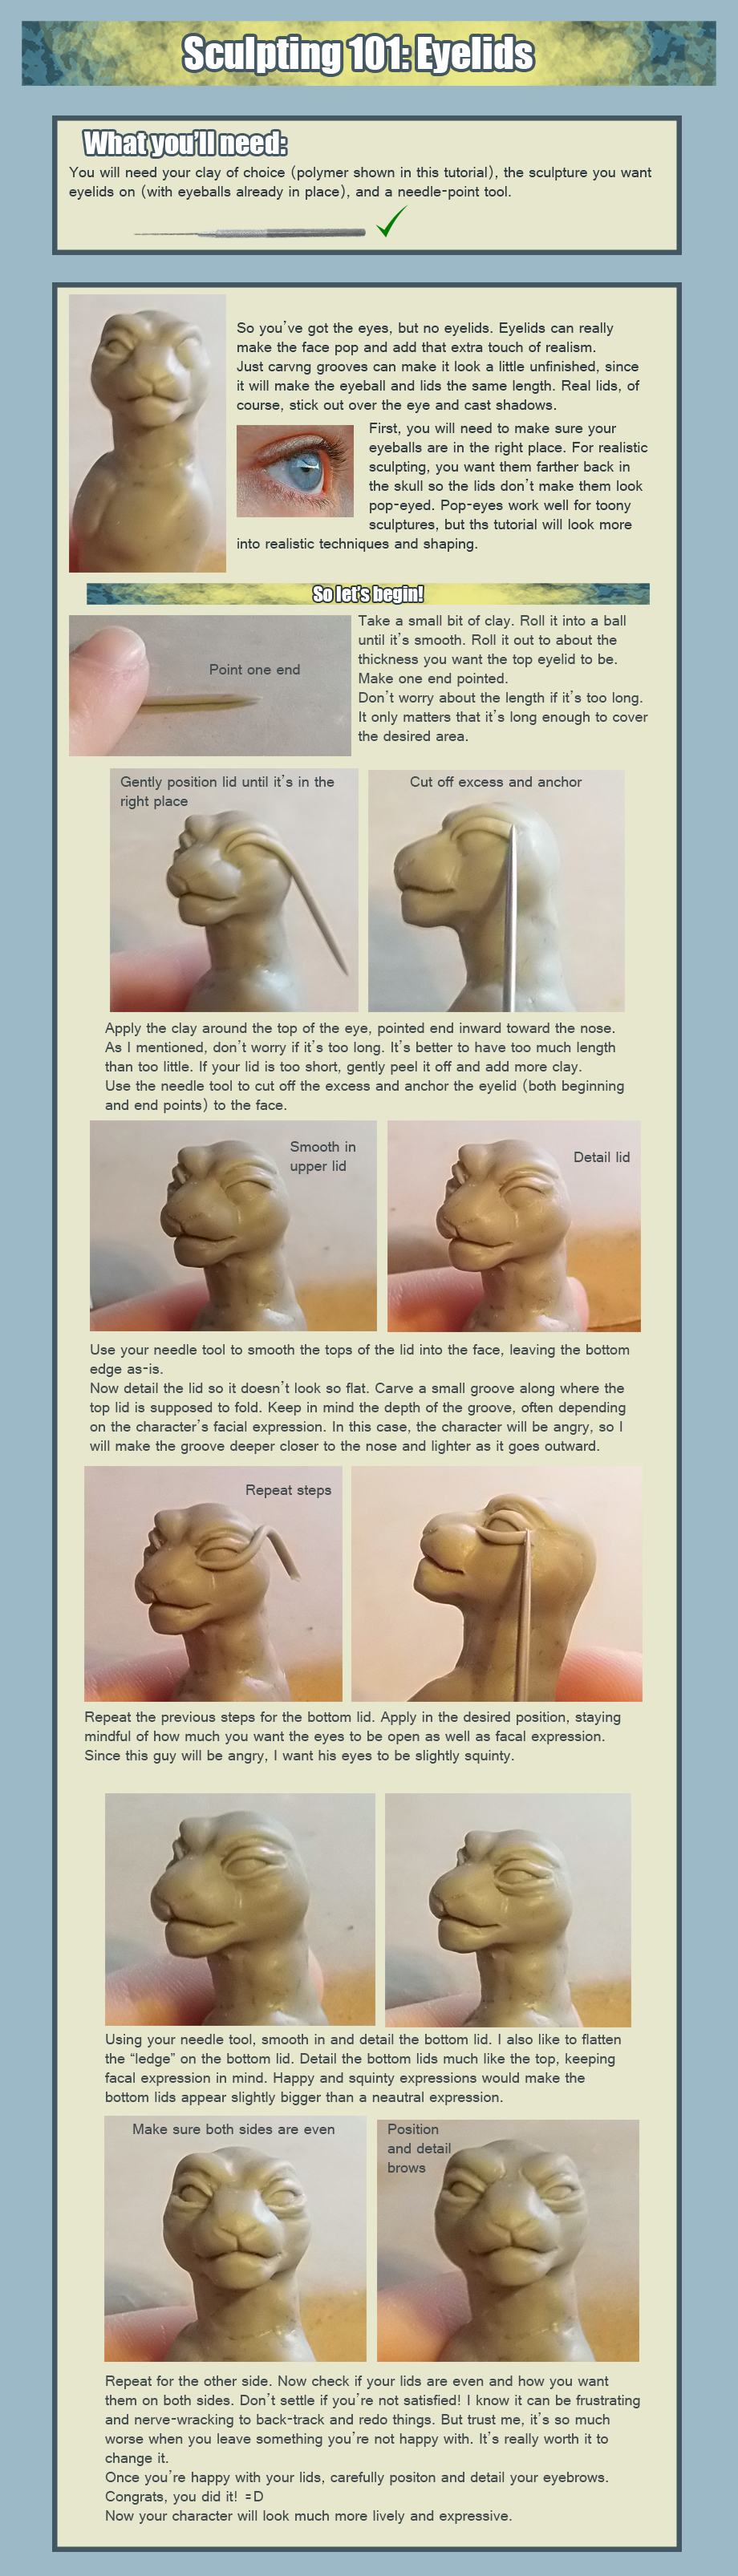 clay sculpting 101